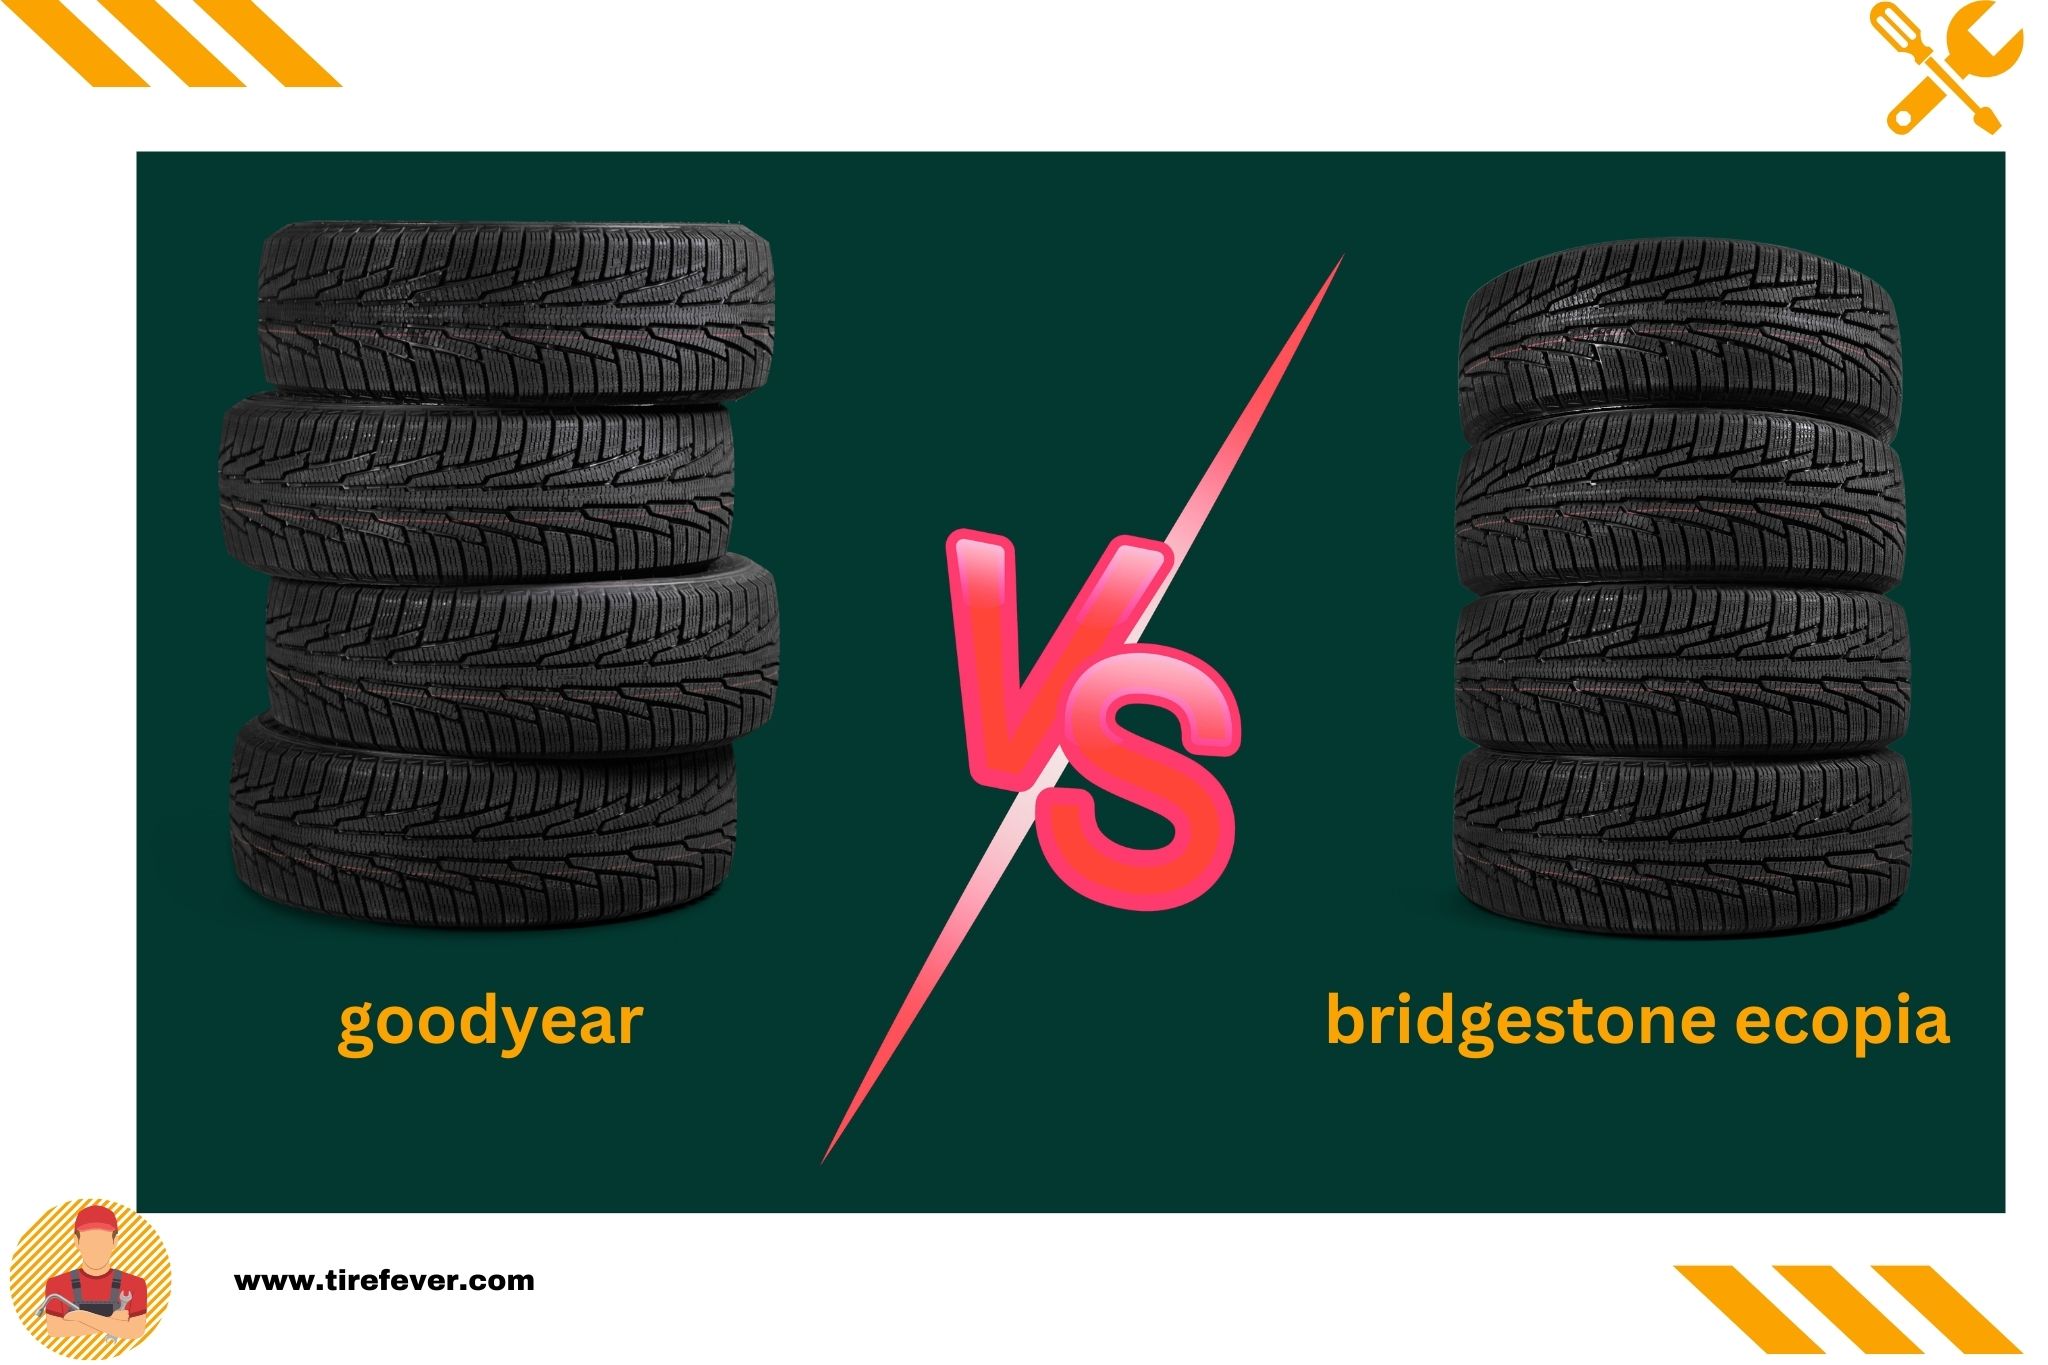 goodyear vs bridgestone ecopia